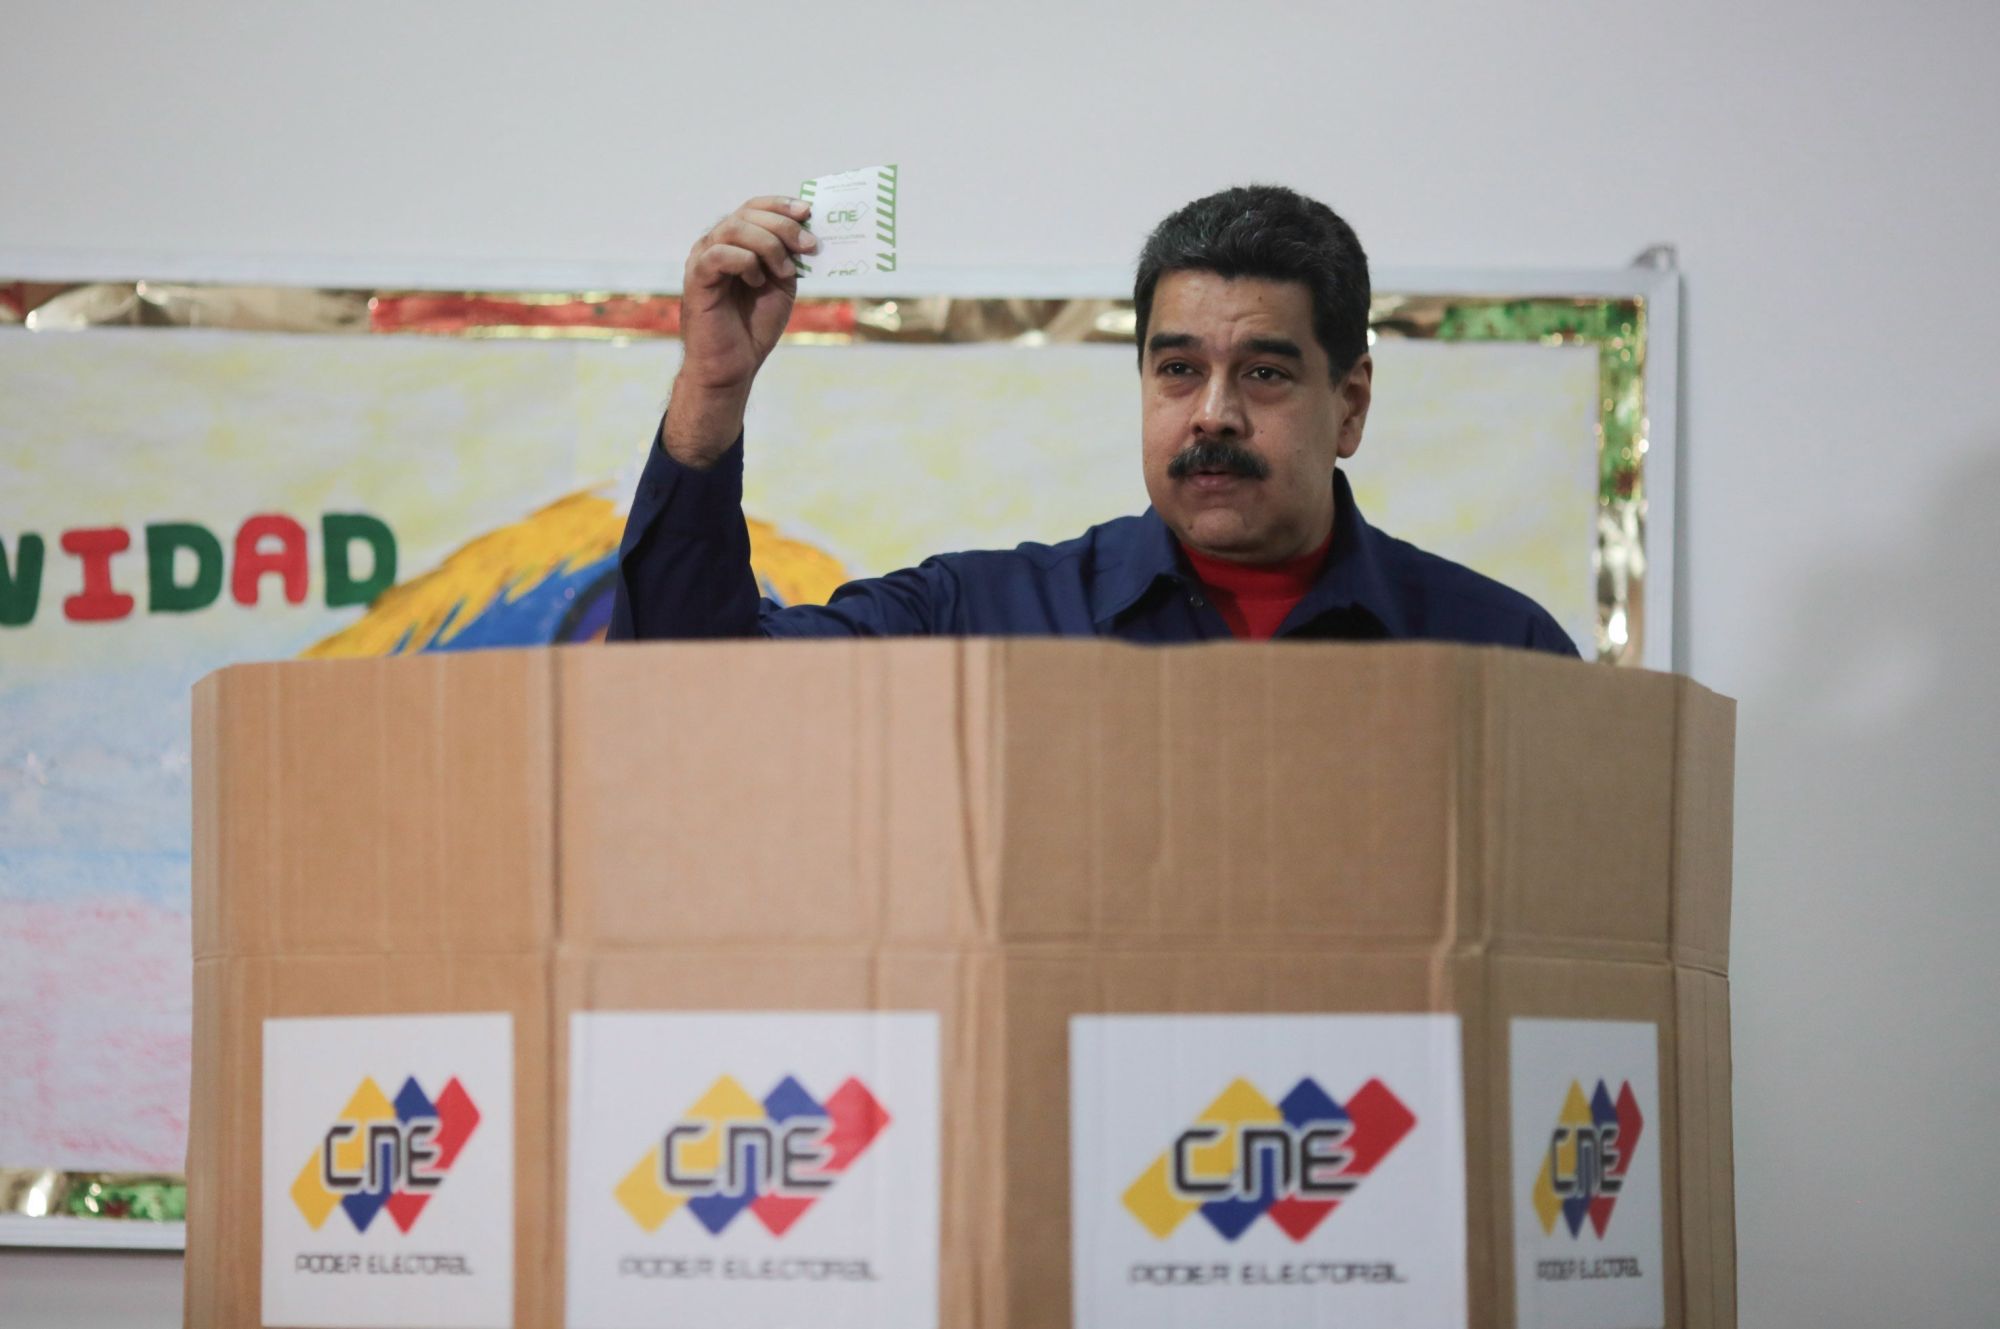 A Miraflores elnöki hivatal által közreadott képen Nicolás Maduro venezuelai államfő voksol a helyhatósági választásokon Caracasban 2017. december 10-én. Maduro bejelentette indulását a 2018-as elnökválasztáson, valamint azt is, hogy kizárják a legfontosabb venezuelai ellenzéki erőket a jövő évi elnökválasztásról, indoklása szerint azért, mert a Demokratikus Egység Kerekasztal (MUD) pártszövetség bojkottálta a 335 polgármester megválasztására irányuló helyhatósági voksolást. (MTI/EPA/Miraflores)